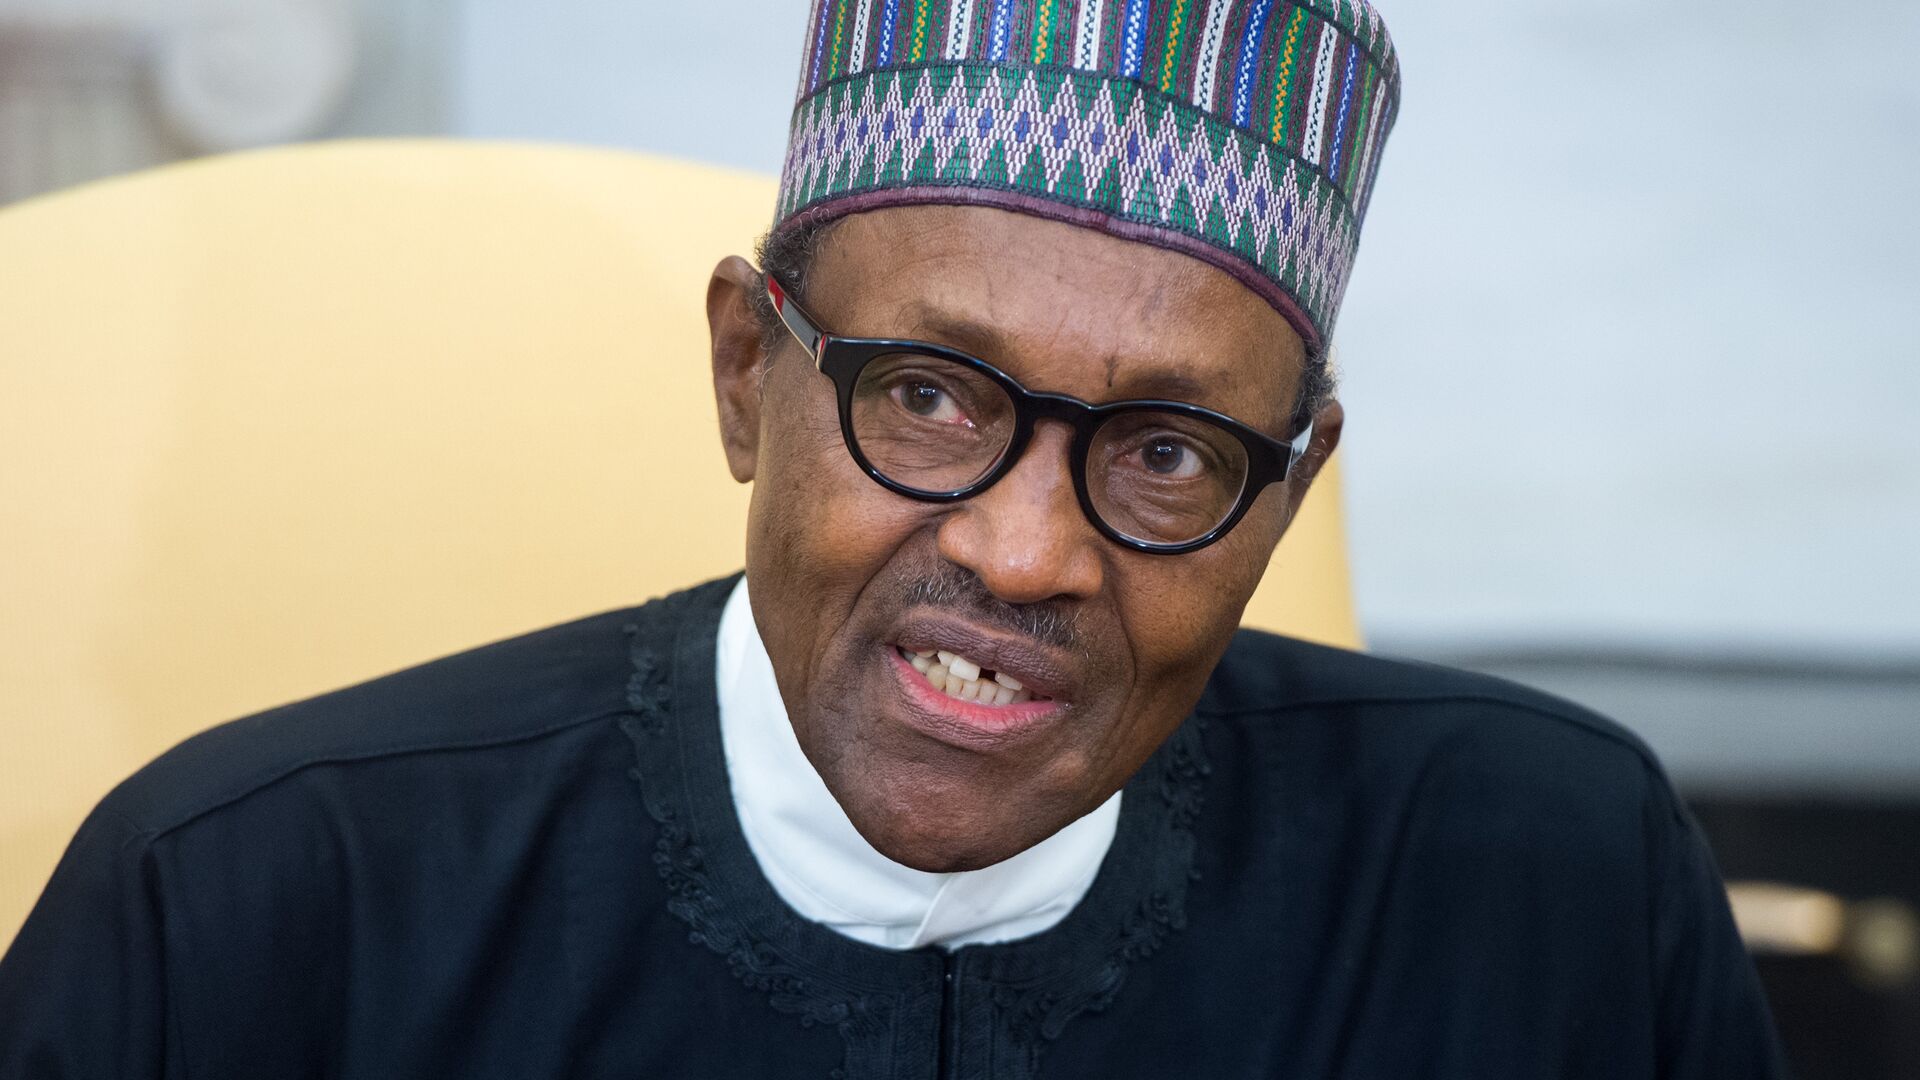 Глава Нигерии заявил, что разочарован удалением своего поста в Twitter